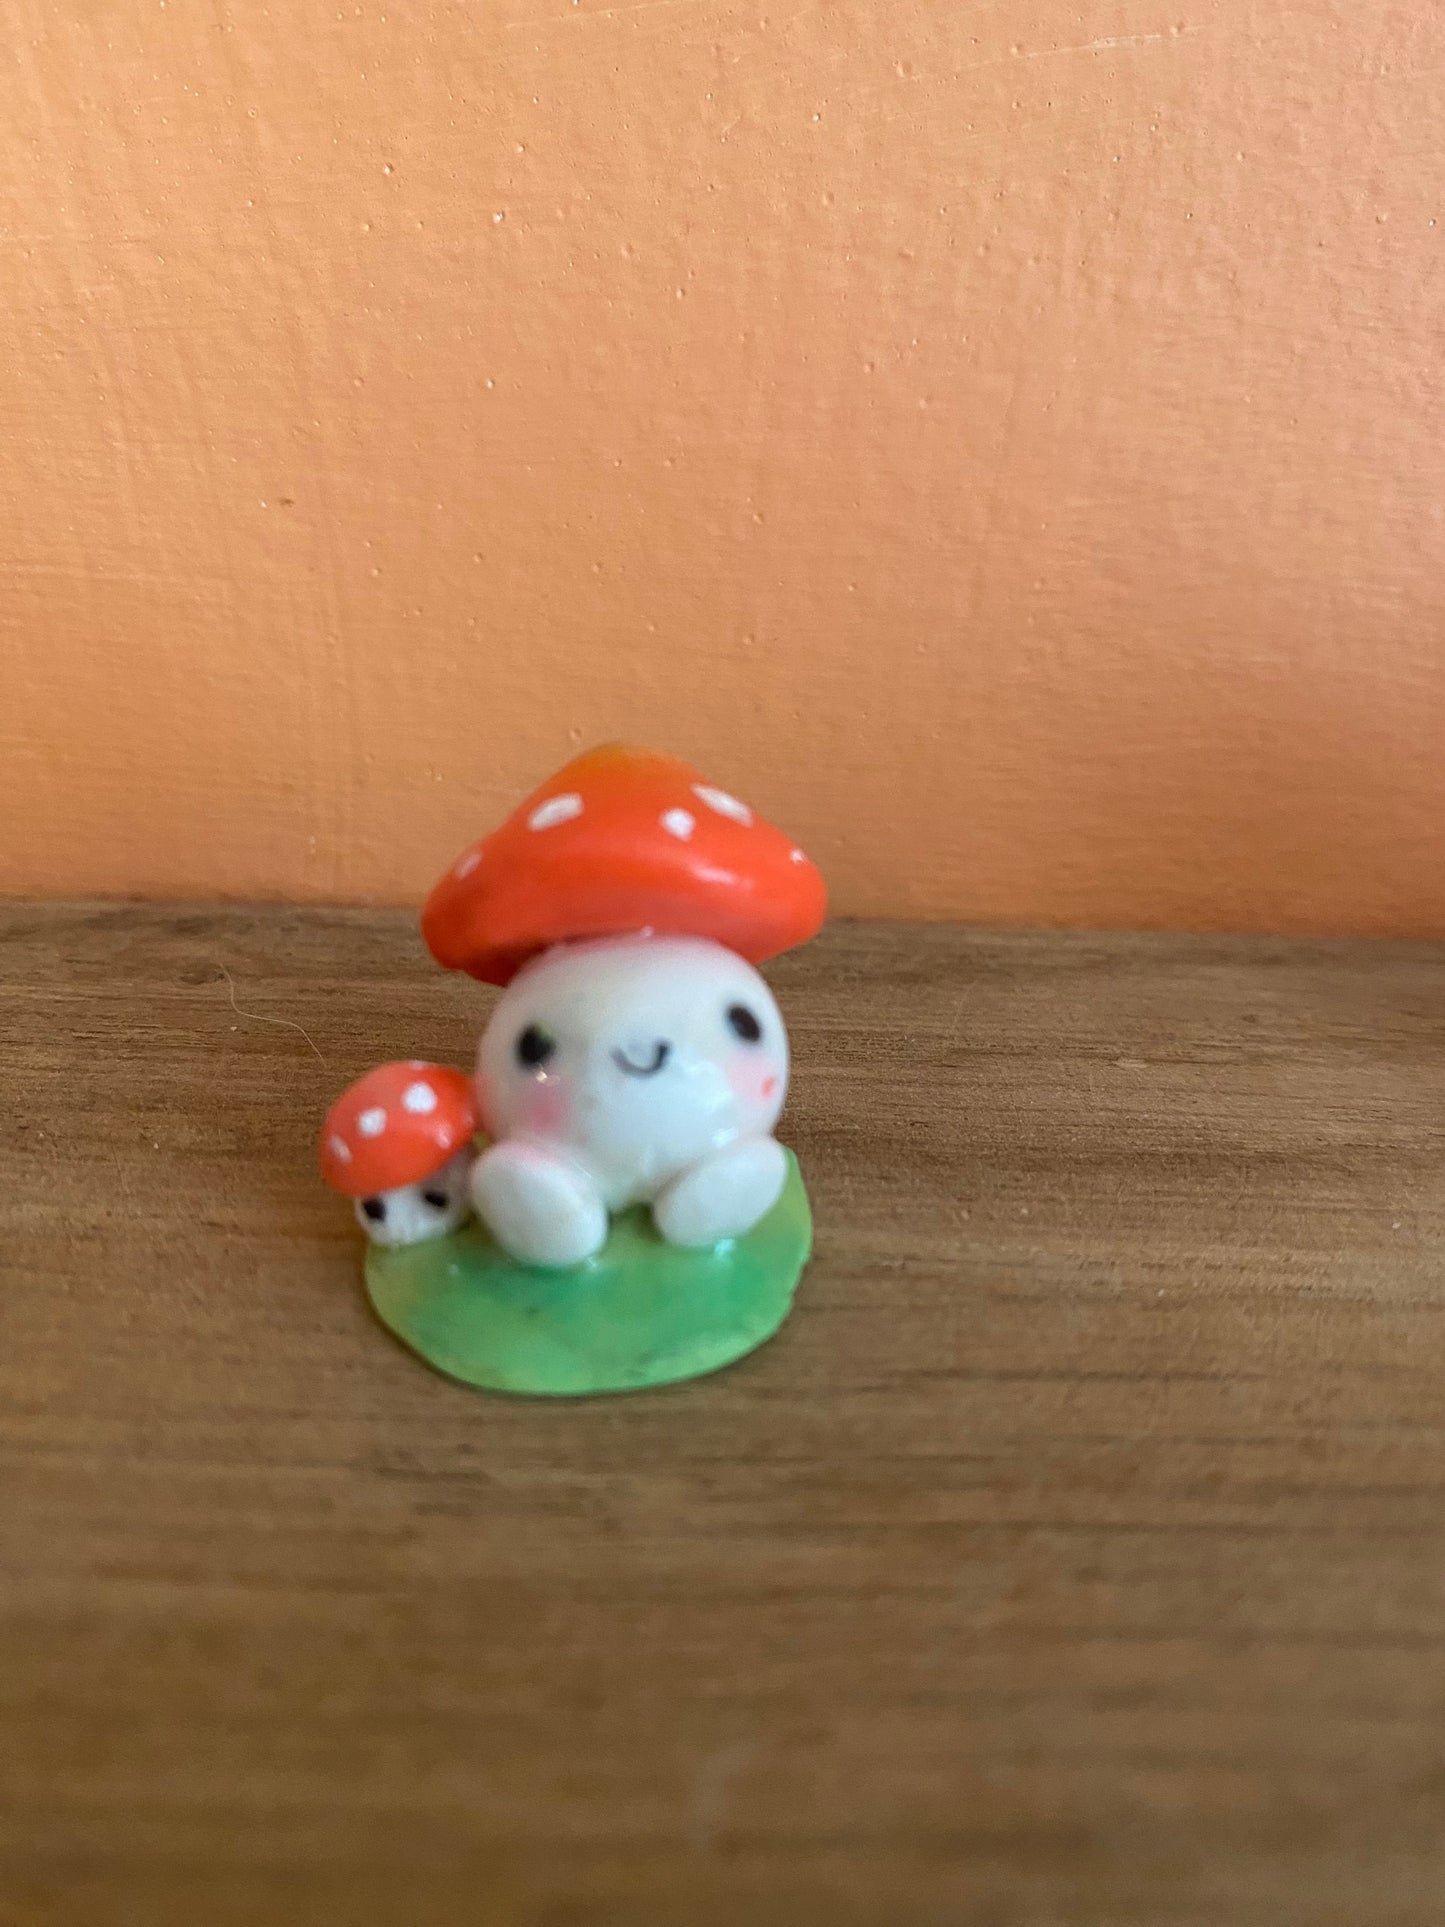 Sweet little mushroom desk buddies